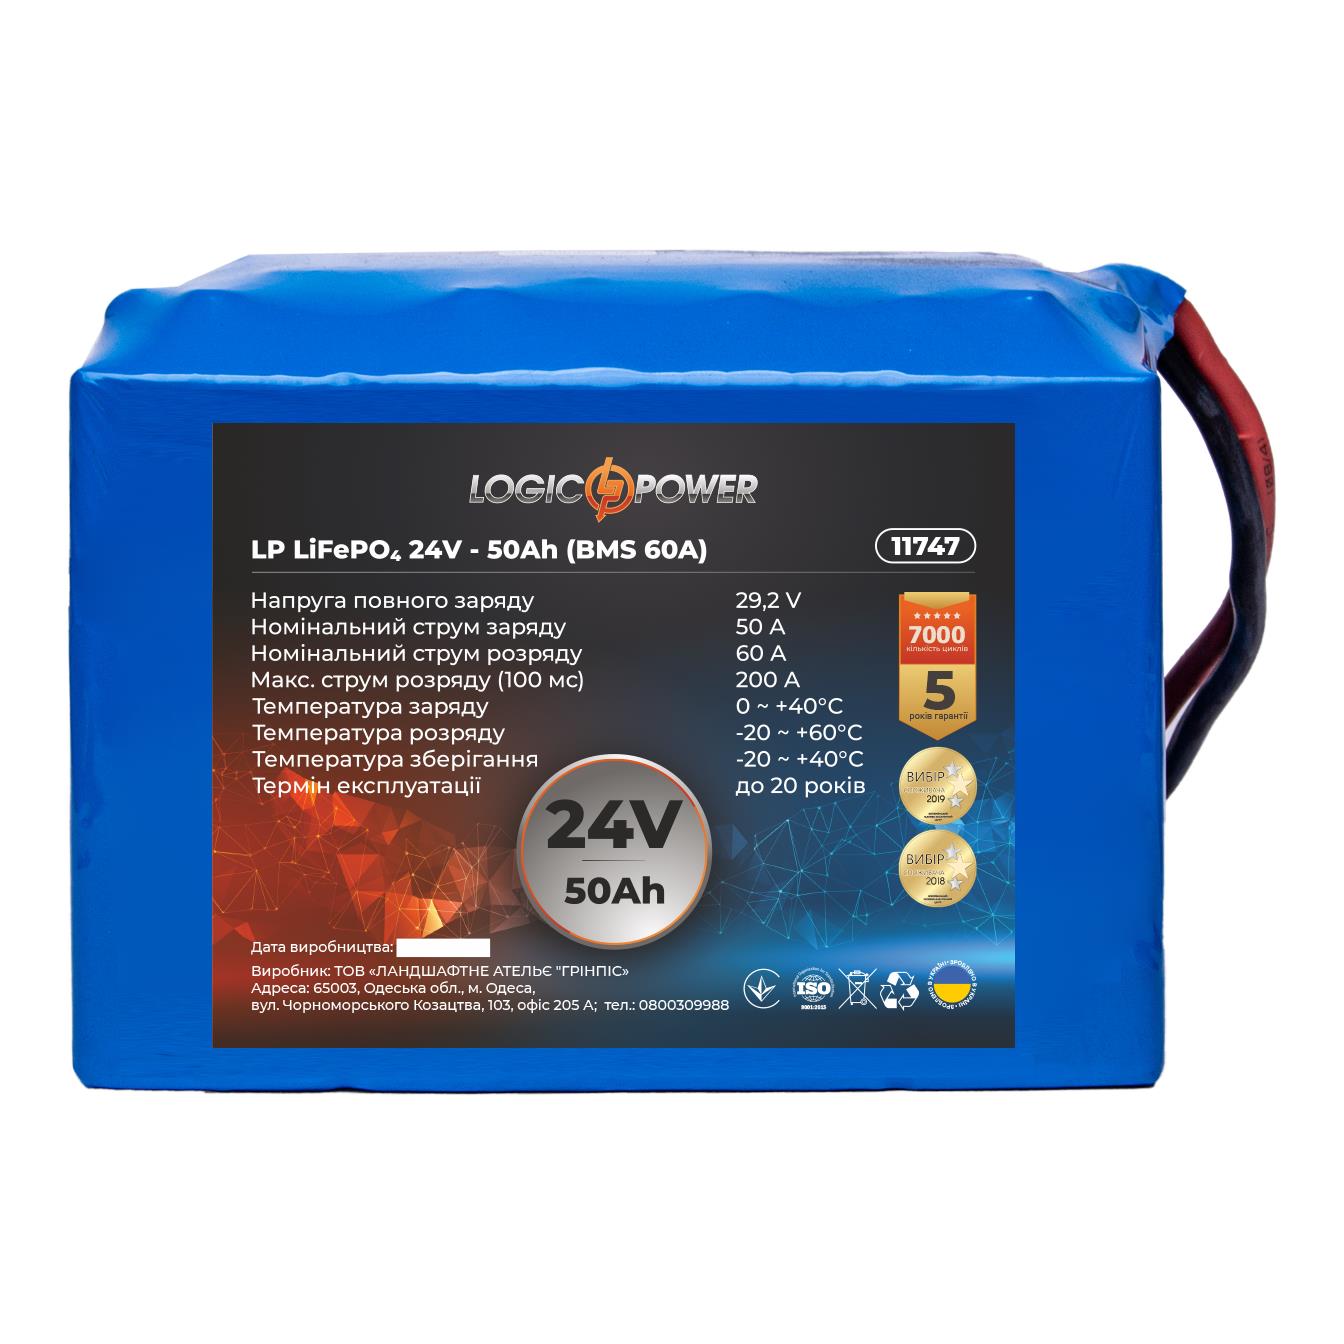 Аккумулятор литий-железо-фосфатный LogicPower LP LiFePO4 24V - 50 Ah (BMS 60A) (11747)